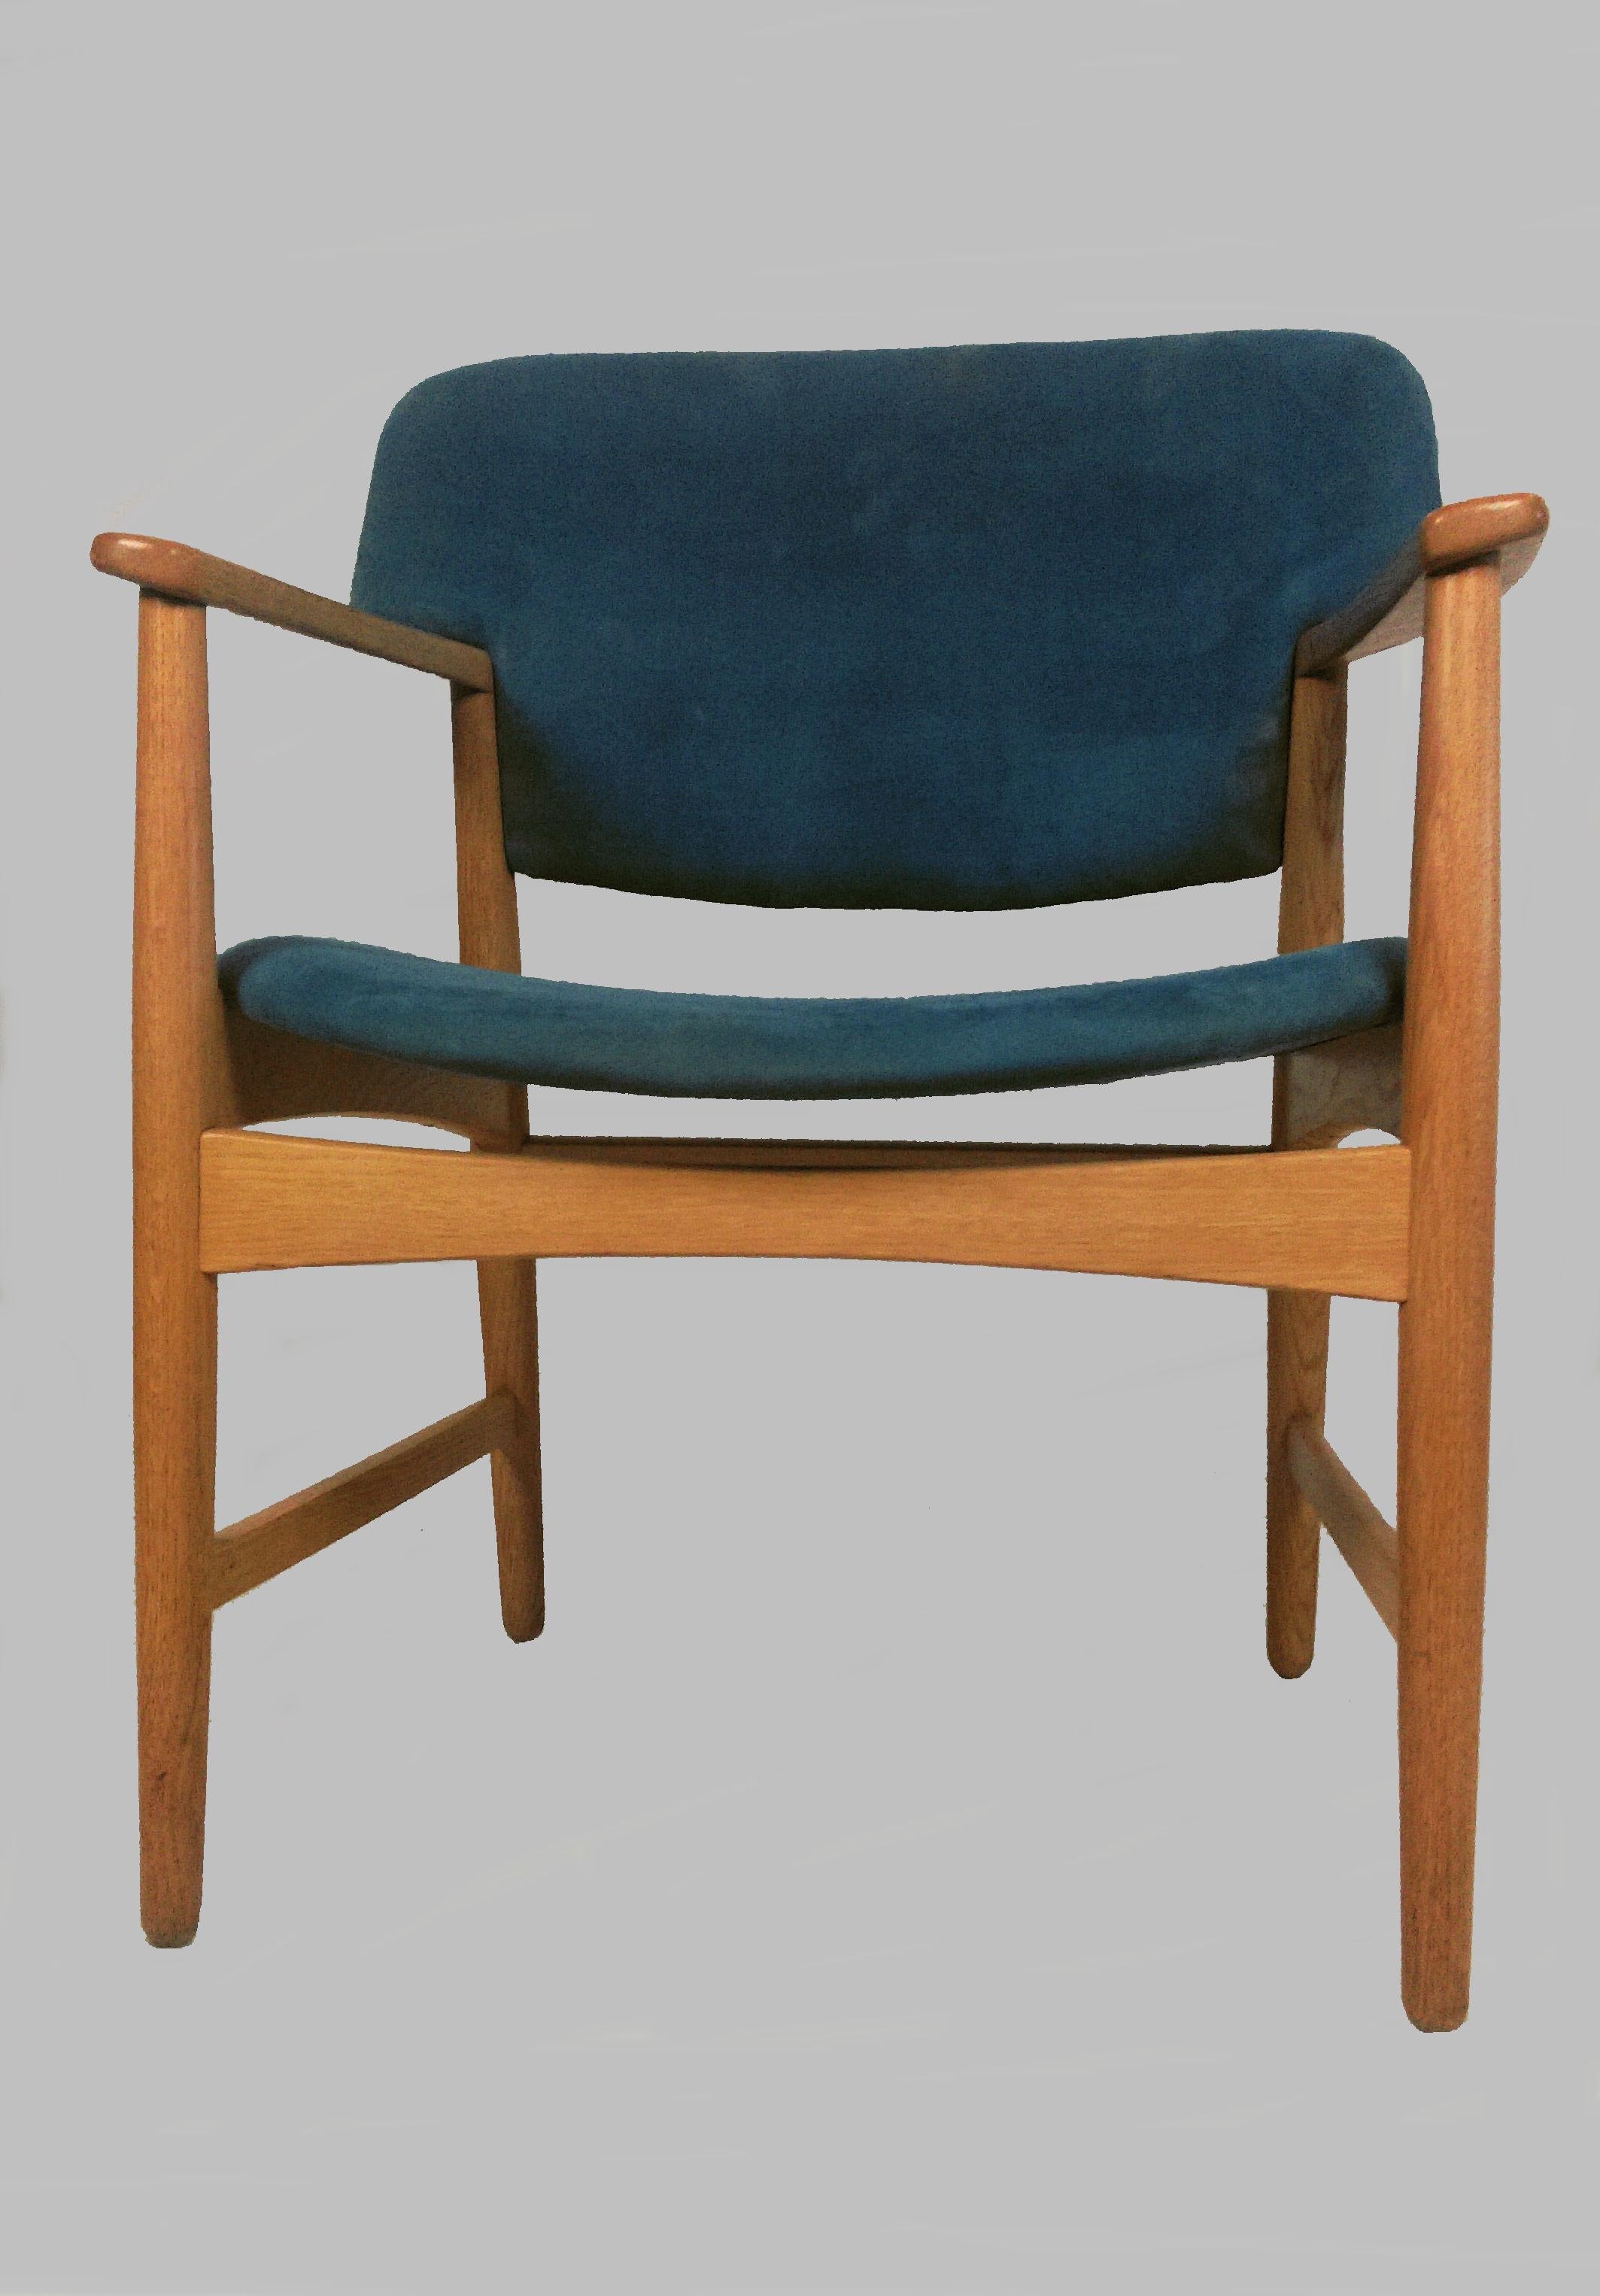 Sessel / Schreibtischstuhl aus Eiche, entworfen von Ejner Larsen und Axel Bender Madsen 1955 für Fritz Hansen.

Die bequemen, gut gestalteten und fast zeitlosen Stühle wurden von unserem Tischler geprüft und aufgearbeitet, um sicherzustellen, dass